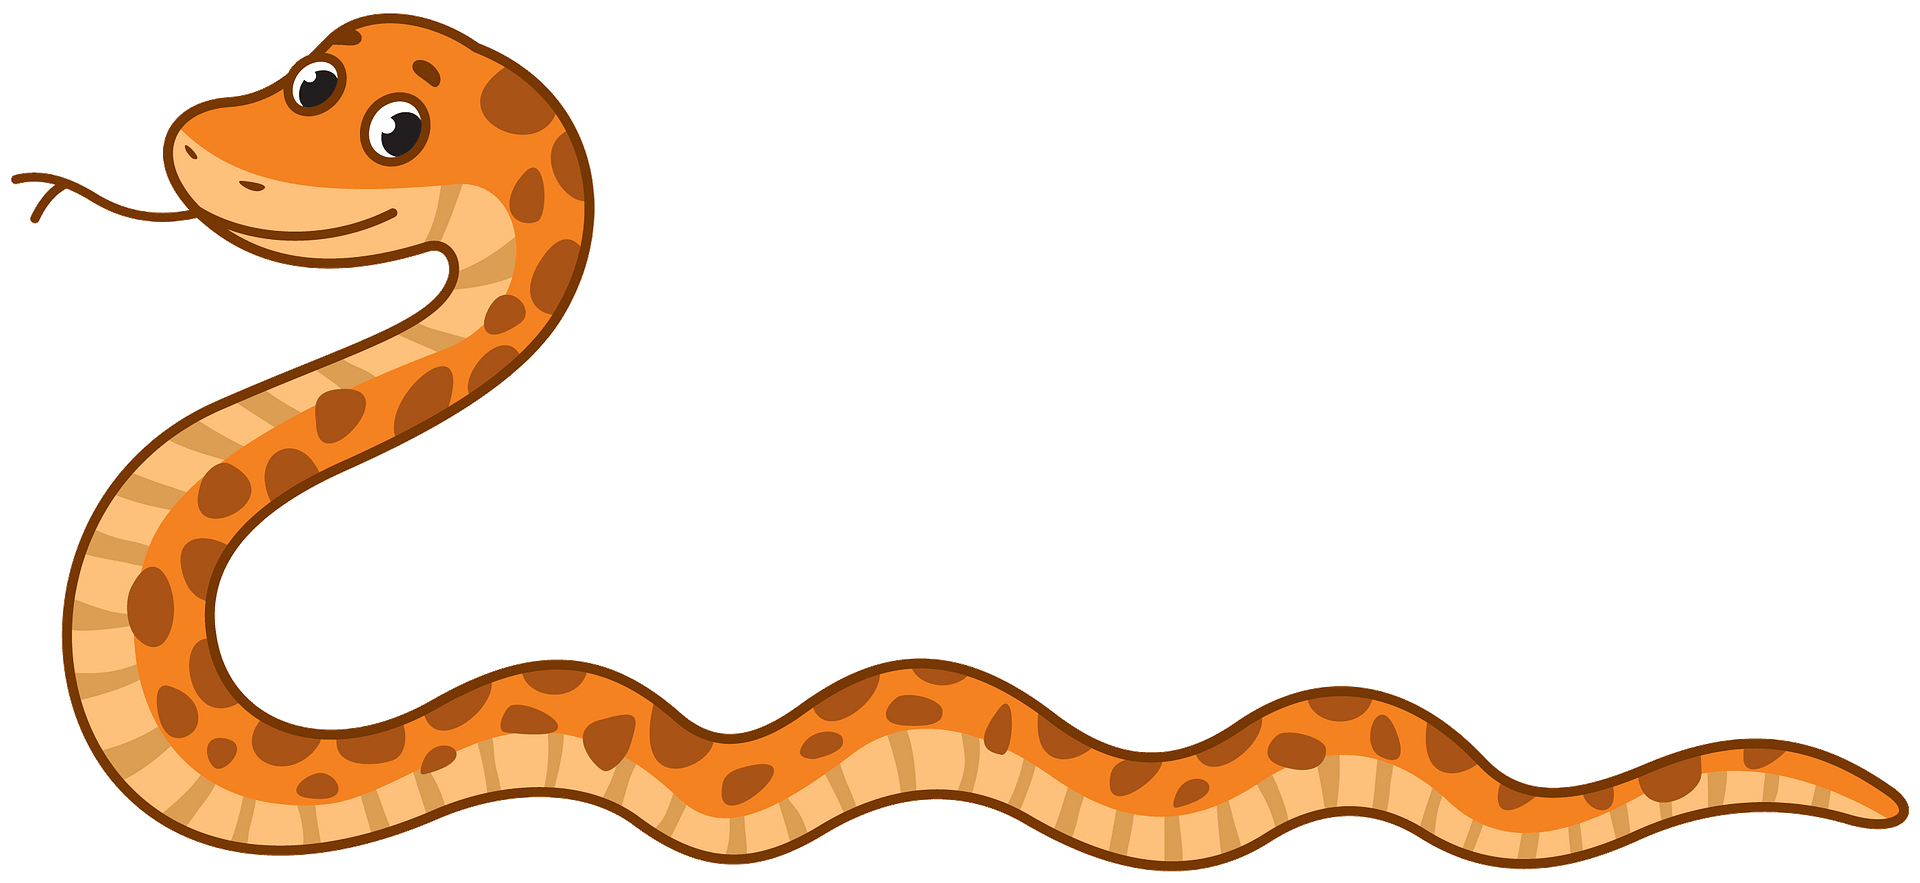 orange spotted snake